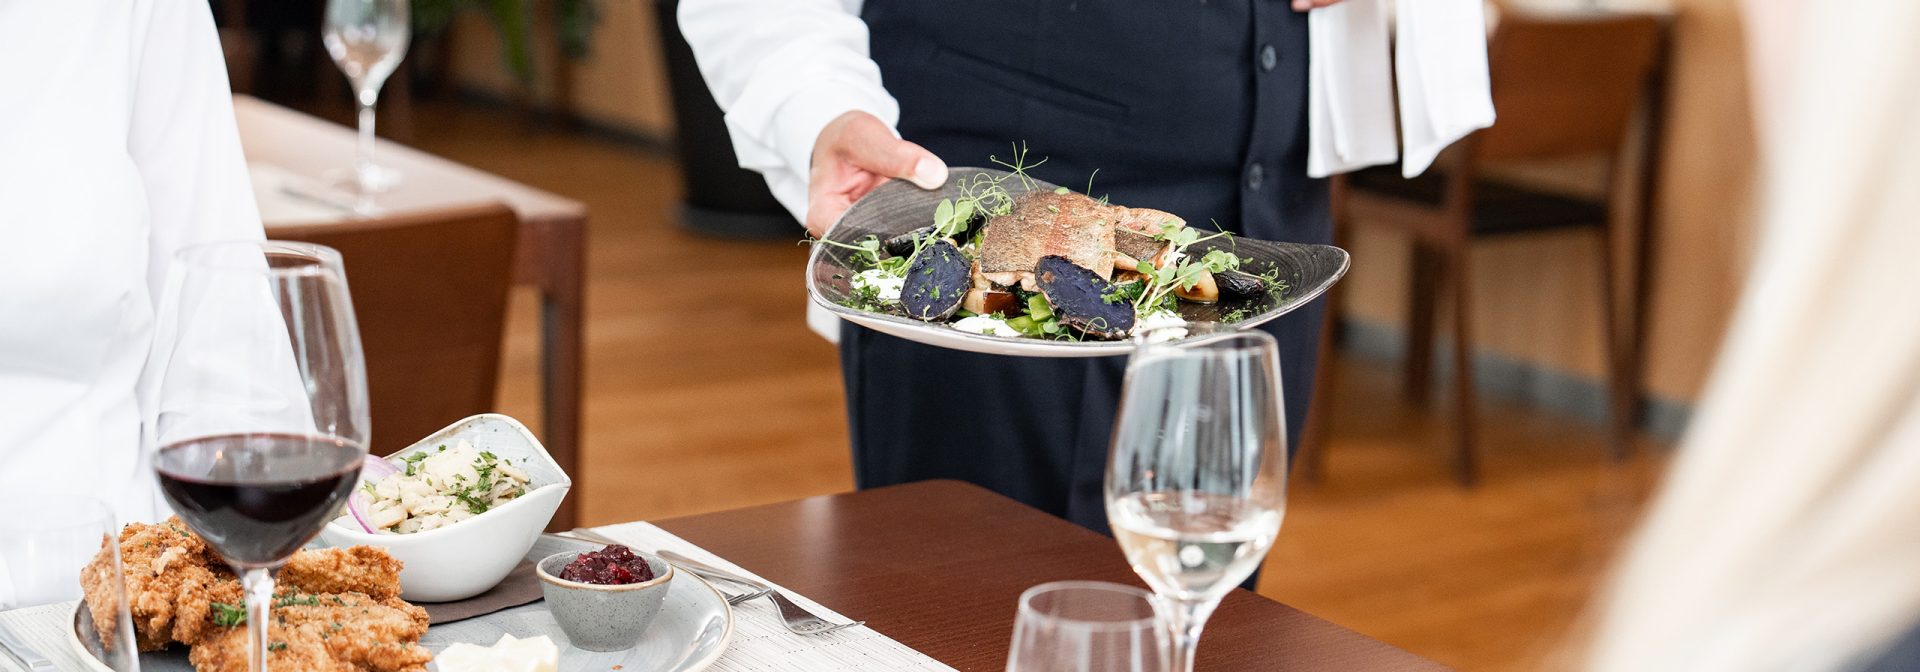 Ein Kellner serviert ein Fischgericht. Auf dem Tisch steht bereits ein Teller Wiener Schnitzel.